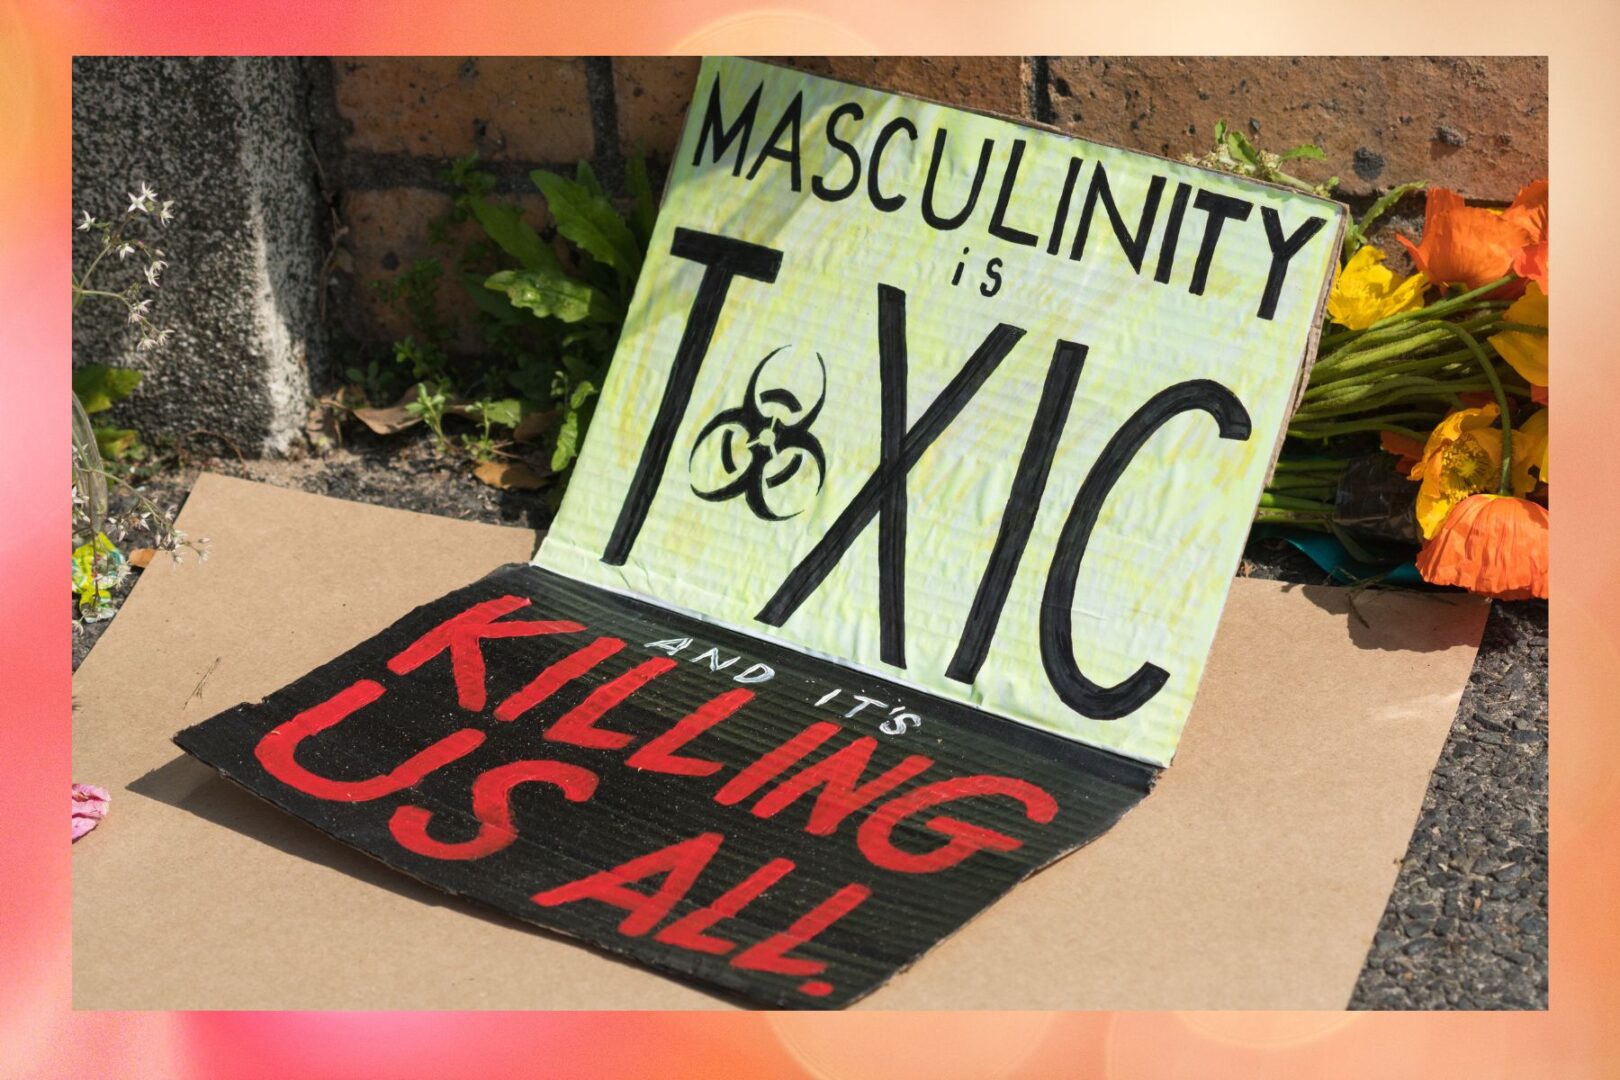 toxic masculinity